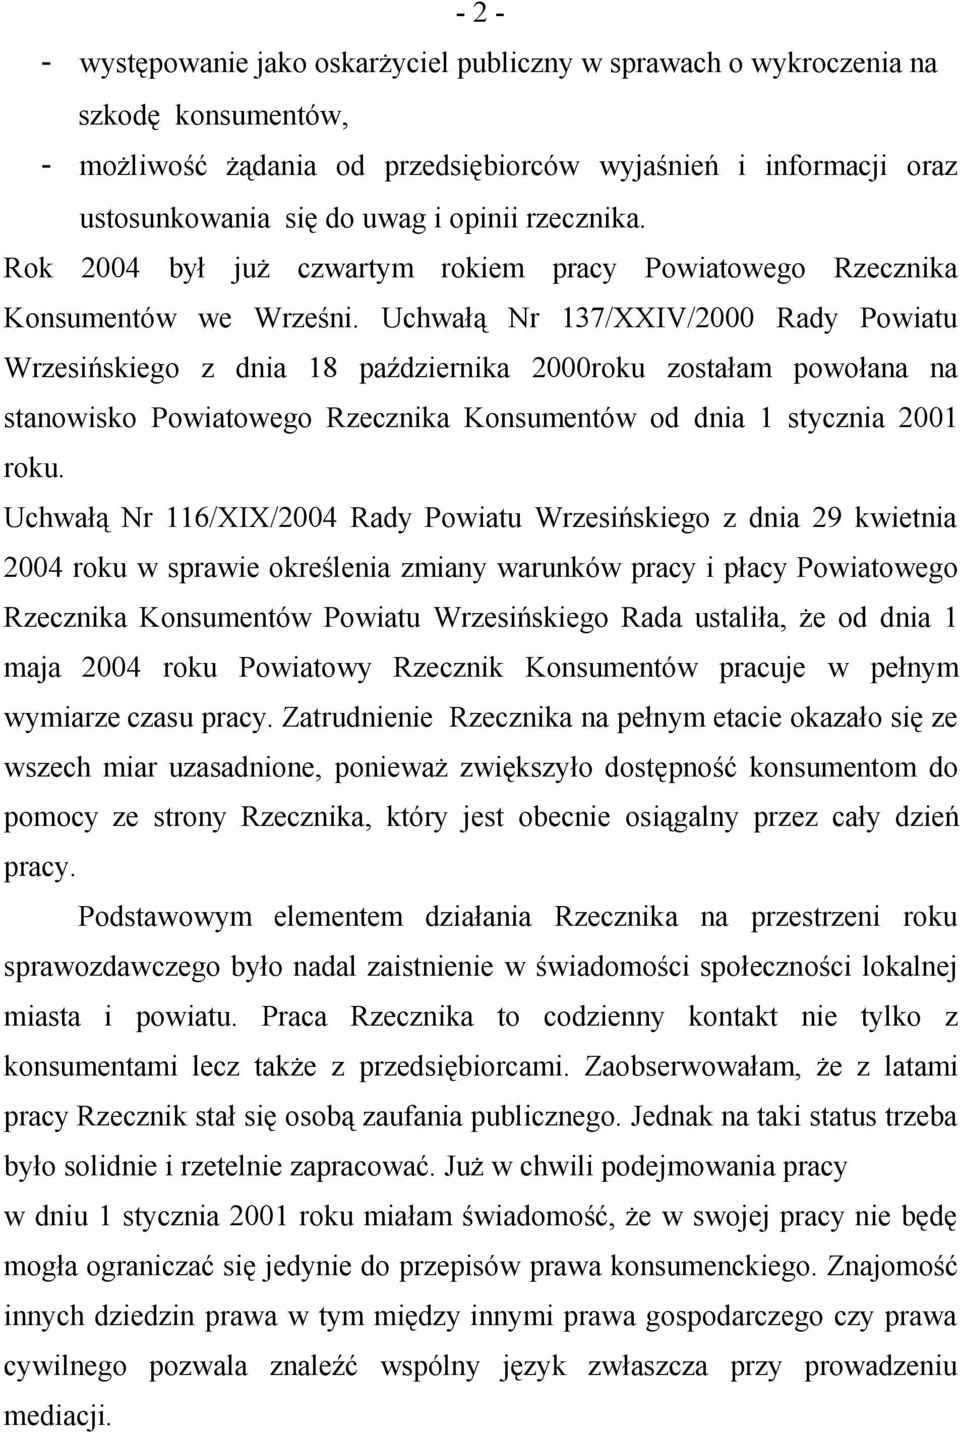 Uchwałą Nr 137/XXIV/2000 Rady Powiatu Wrzesińskiego z dnia 18 października 2000roku zostałam powołana na stanowisko Powiatowego Rzecznika Konsumentów od dnia 1 stycznia 2001 roku.